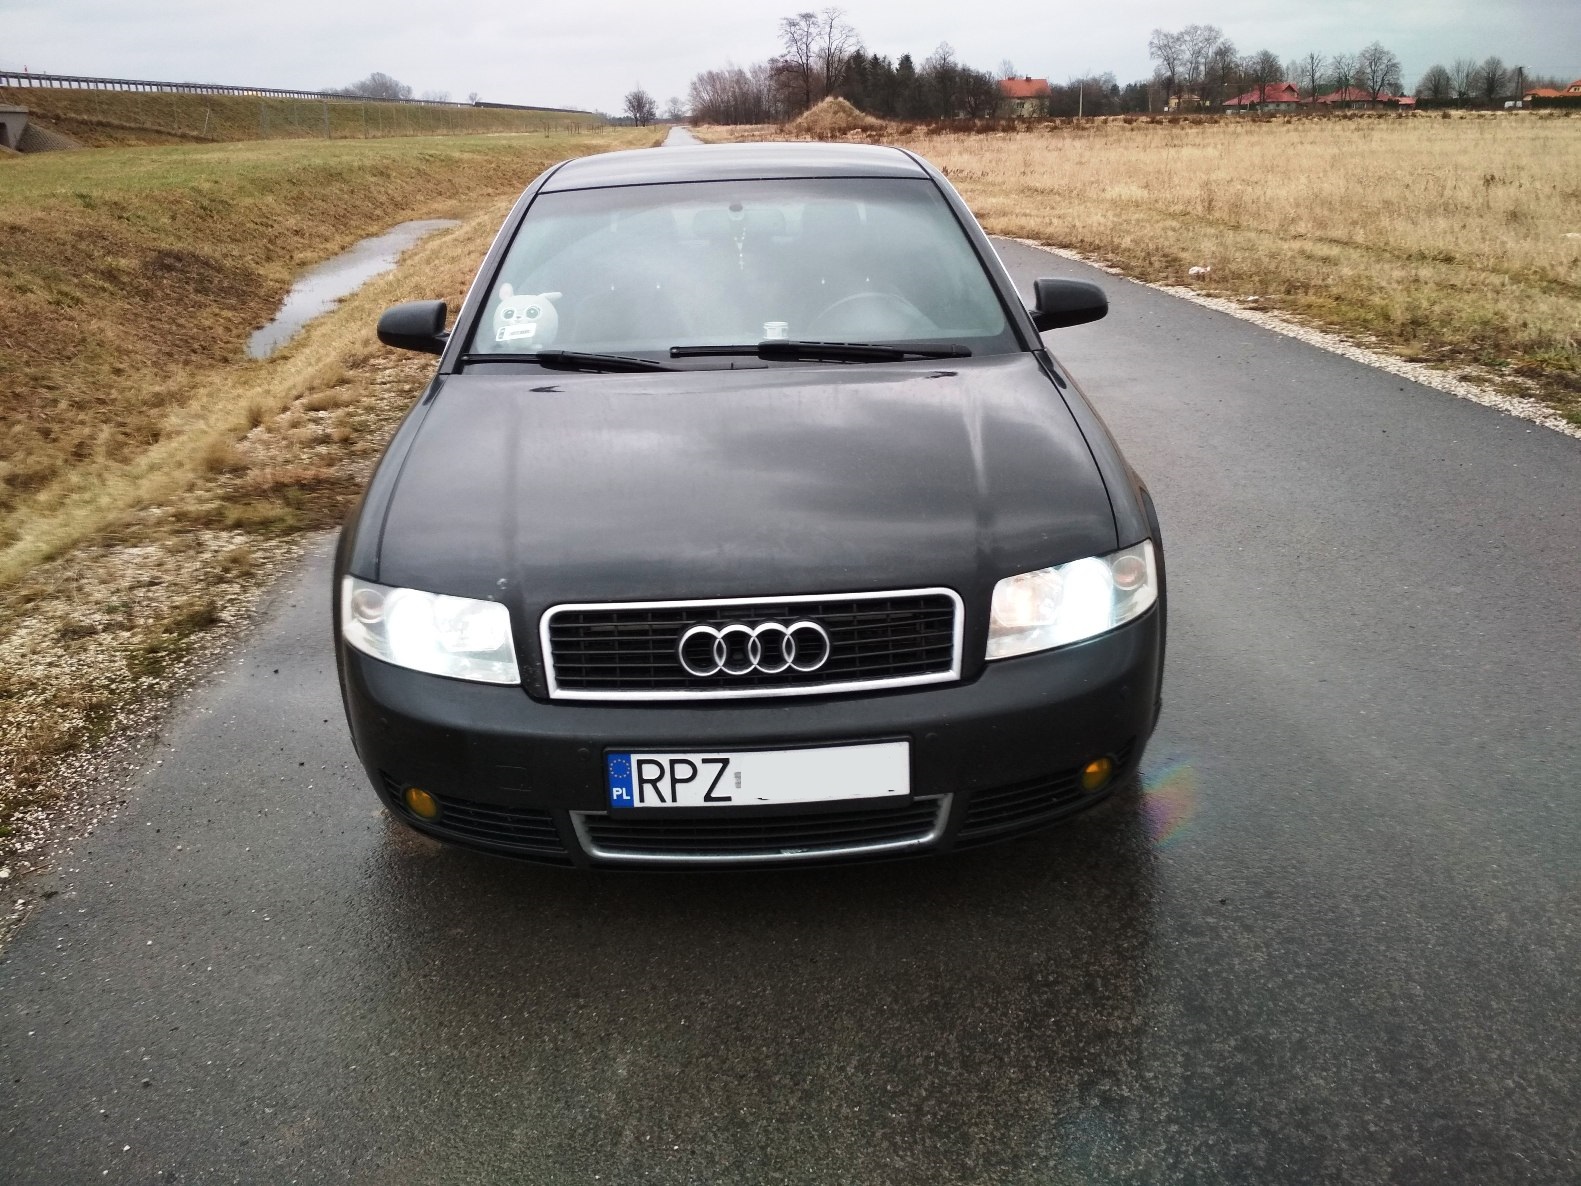 Audi A4 B6 1.8T 190KM >> 224KM 320Nm